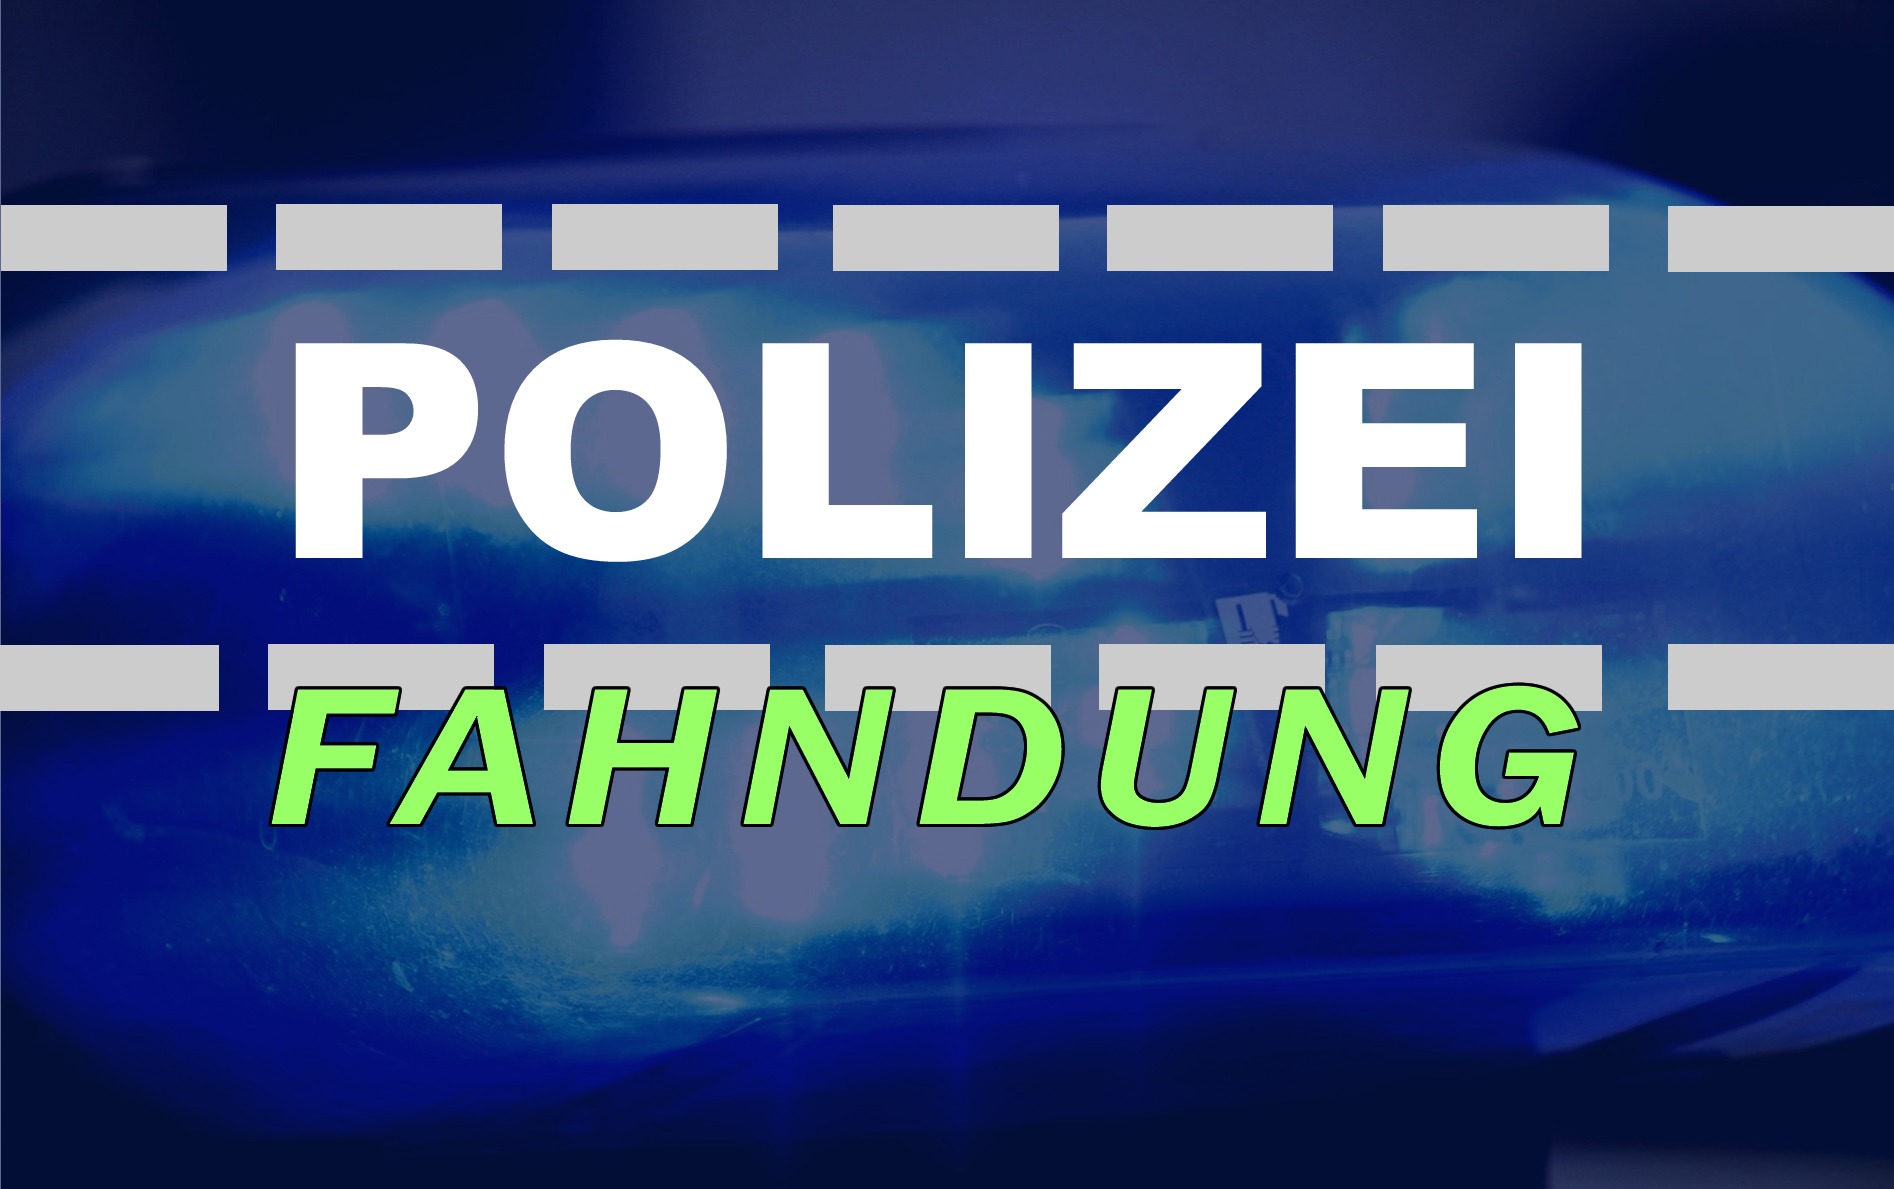 Saalekreis-Polizei-fahndet-nach-Ladendieben